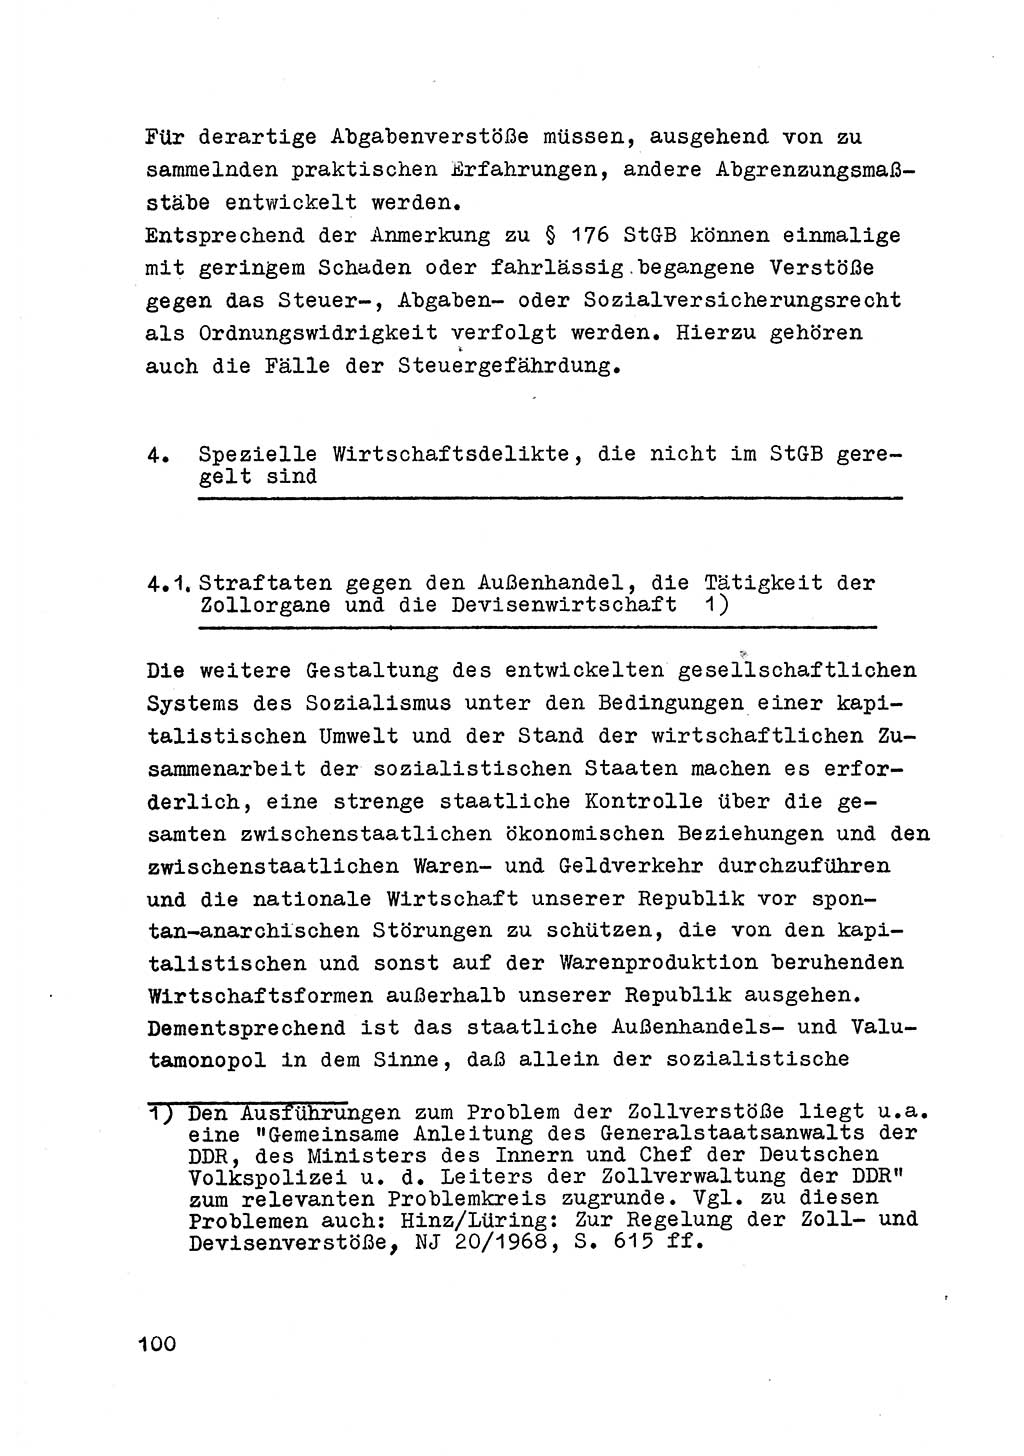 Strafrecht der DDR (Deutsche Demokratische Republik), Besonderer Teil, Lehrmaterial, Heft 6 1970, Seite 100 (Strafr. DDR BT Lehrmat. H. 6 1970, S. 100)